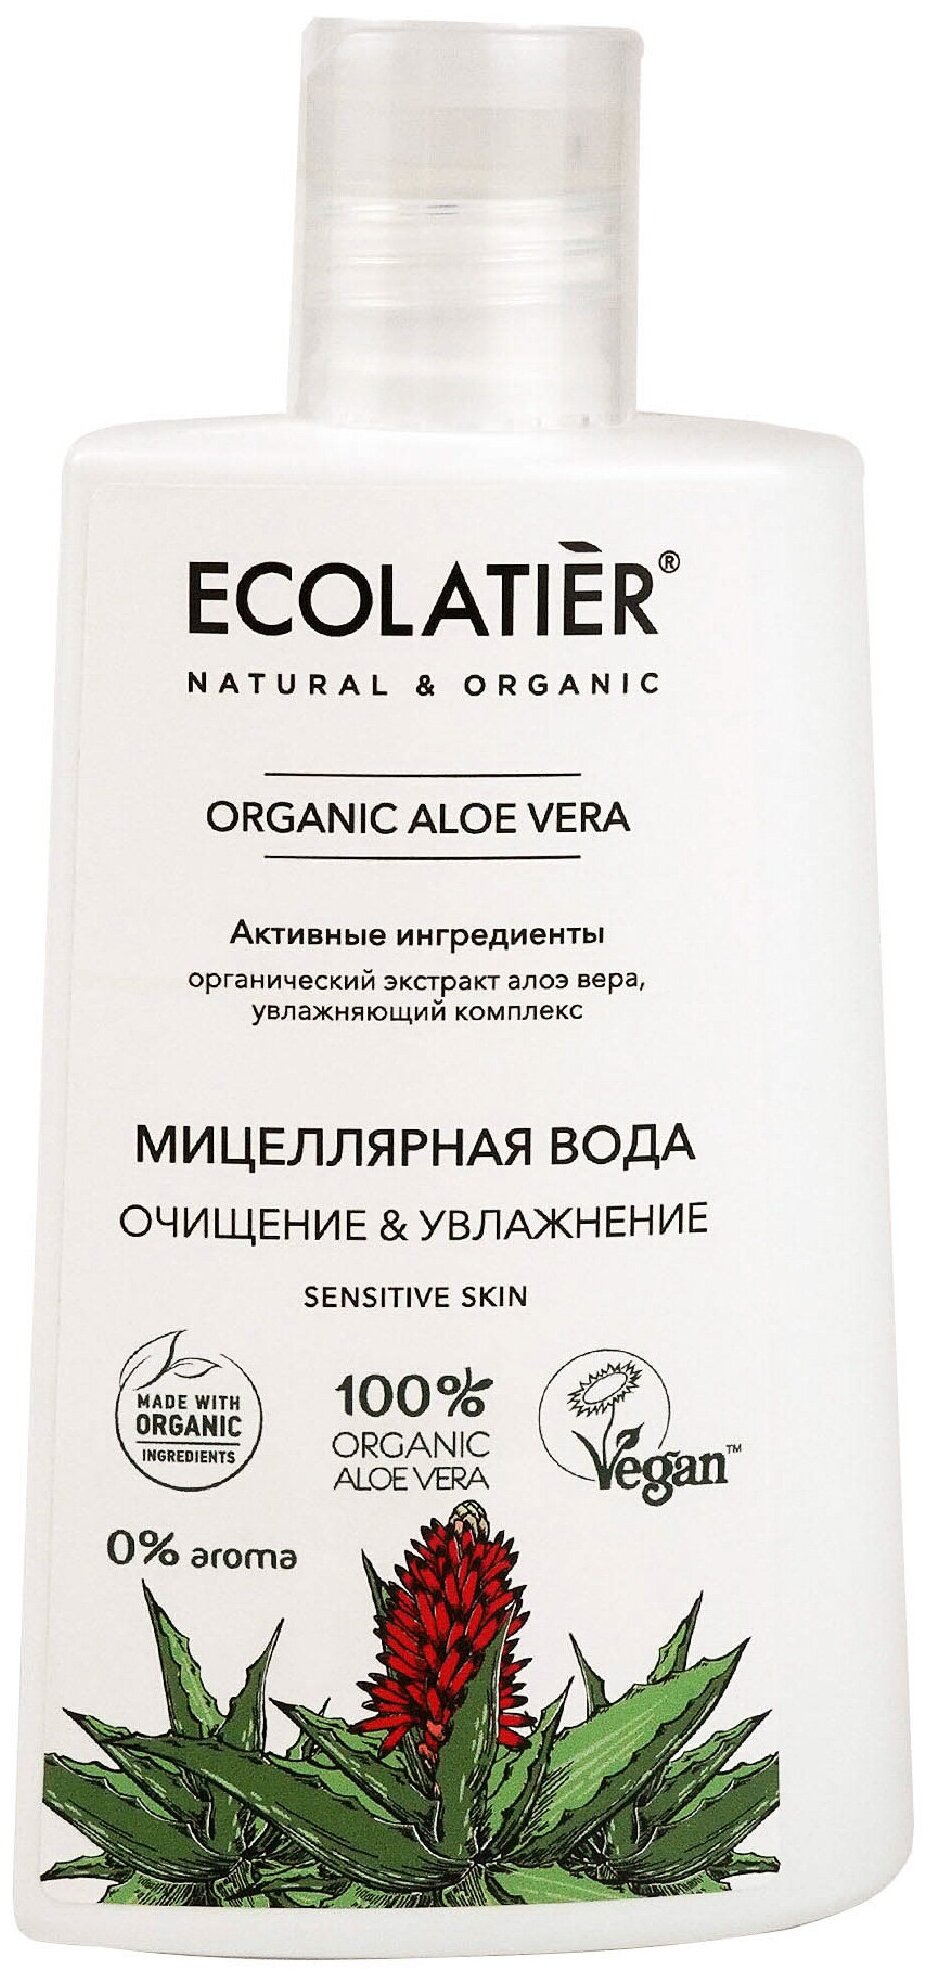 Ecolatier Мицеллярная вода Очищение & Увлажнение Organic Aloe Vera 250 мл